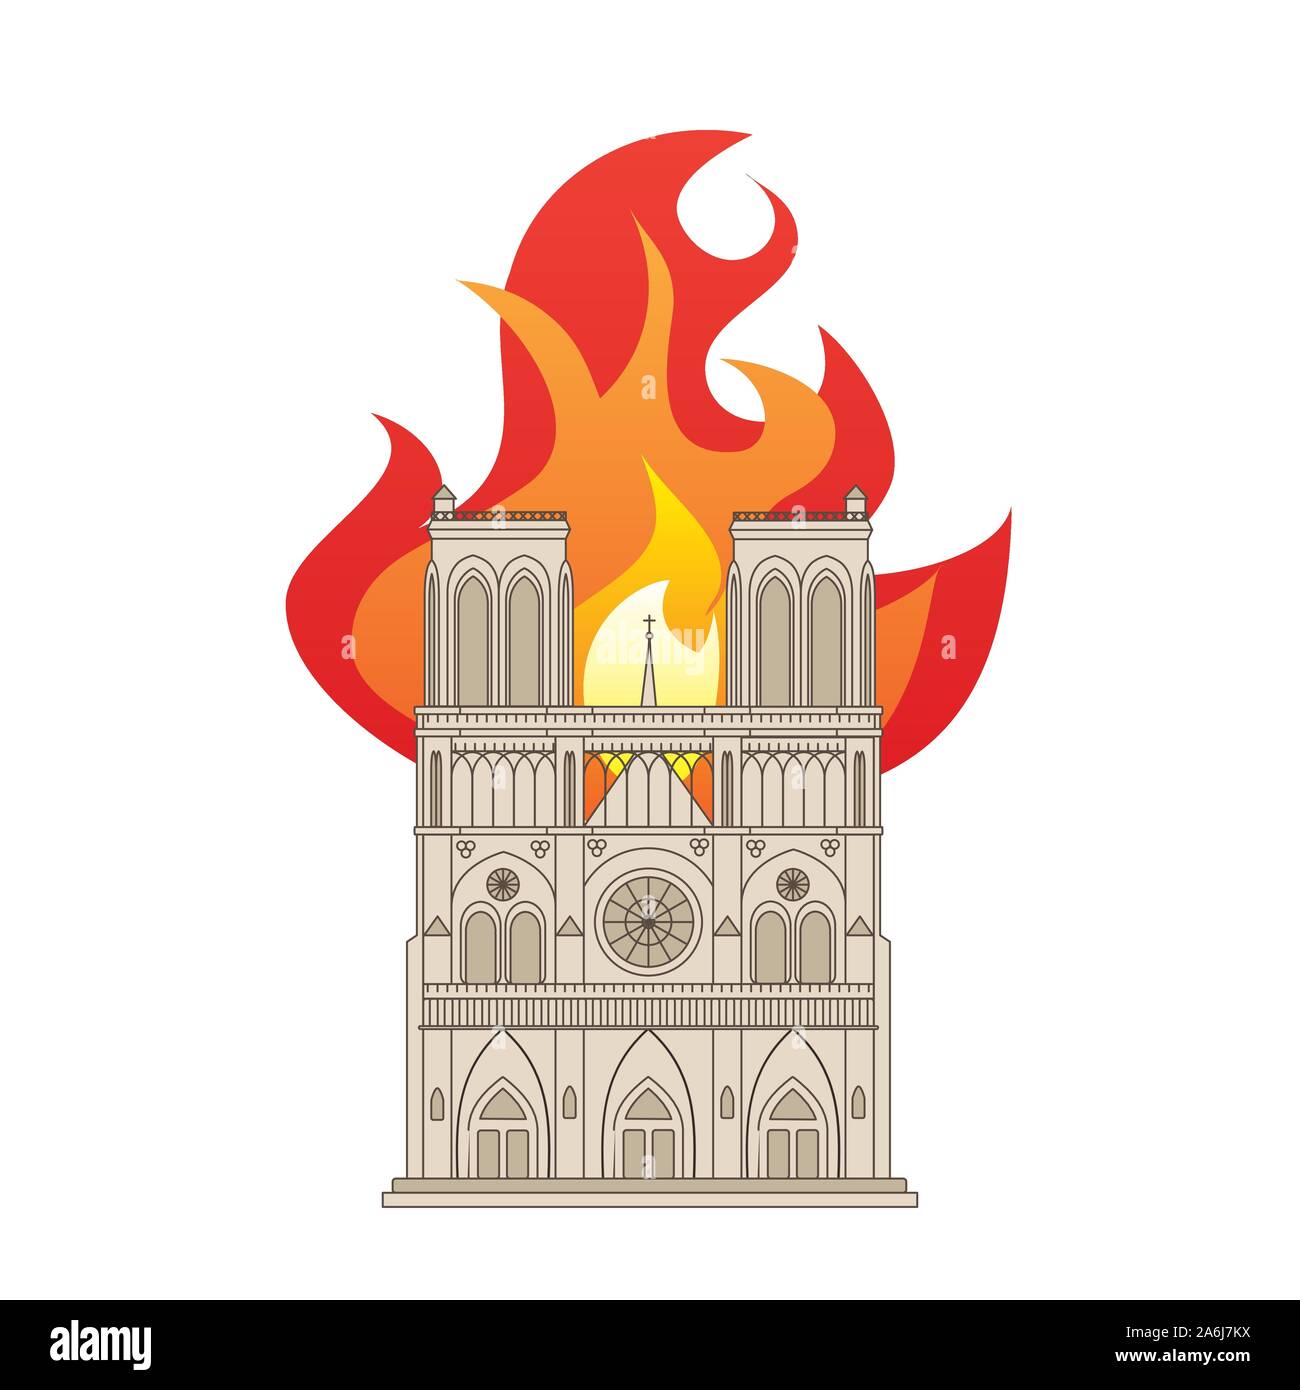 Die Kathedrale Notre Dame in Paris, Frankreich. Farbe, Zeichnung, die das Gebäude in Brand. EPS 10 Vektor Format Stock Vektor